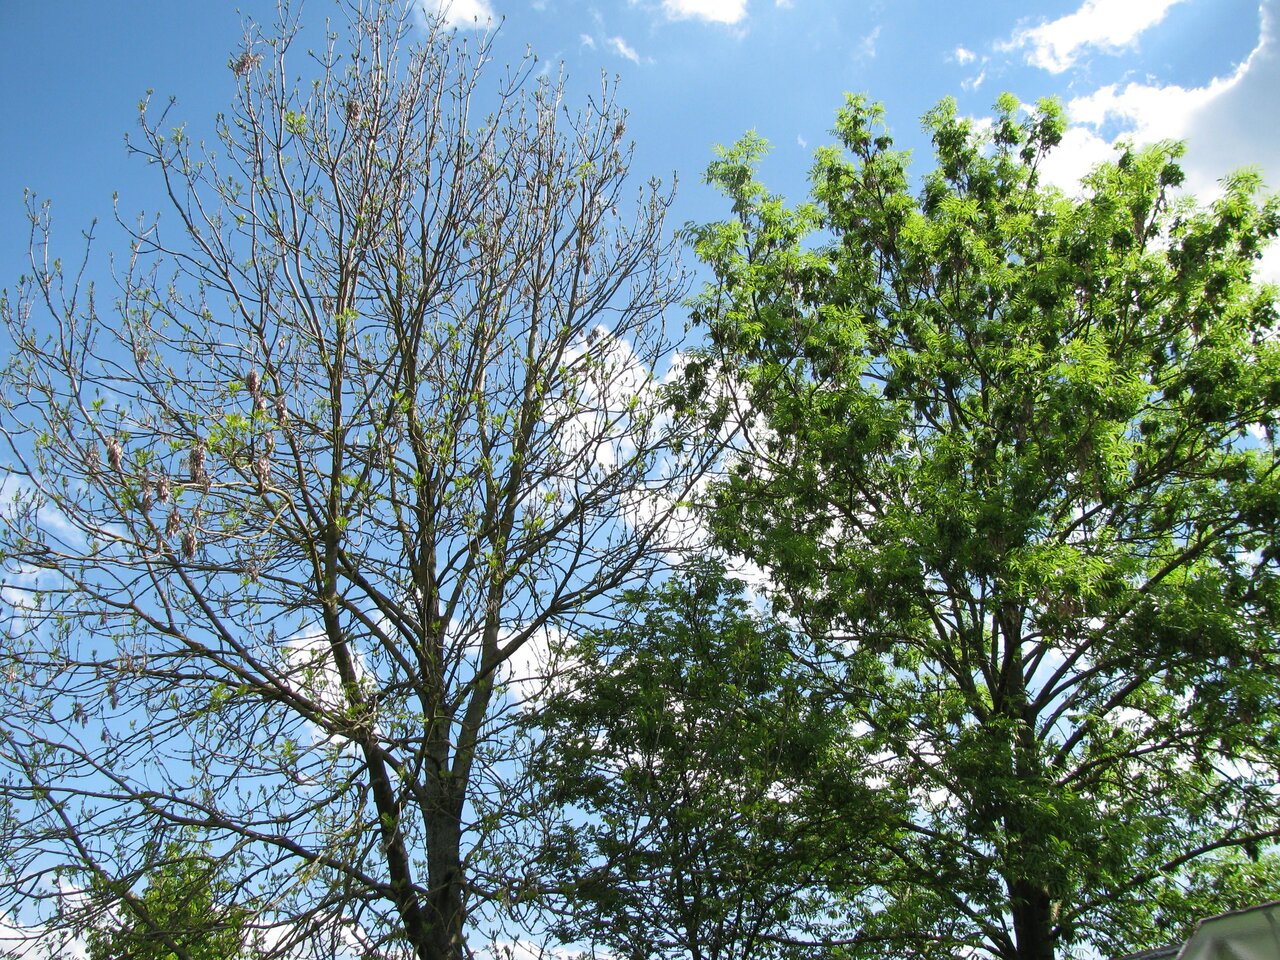 Das Bild zeigt Kronensymptome des Eschentriebsterbens. Charakteristisch sind abgestorbene Äste im äußeren Bereich der Krone. Im Inneren sieht man büschelige Restbelaubung. Diese Symptome sind rasch fortschreitend, wie man an einem vitaleren Baum rechts im Bild sieht. 